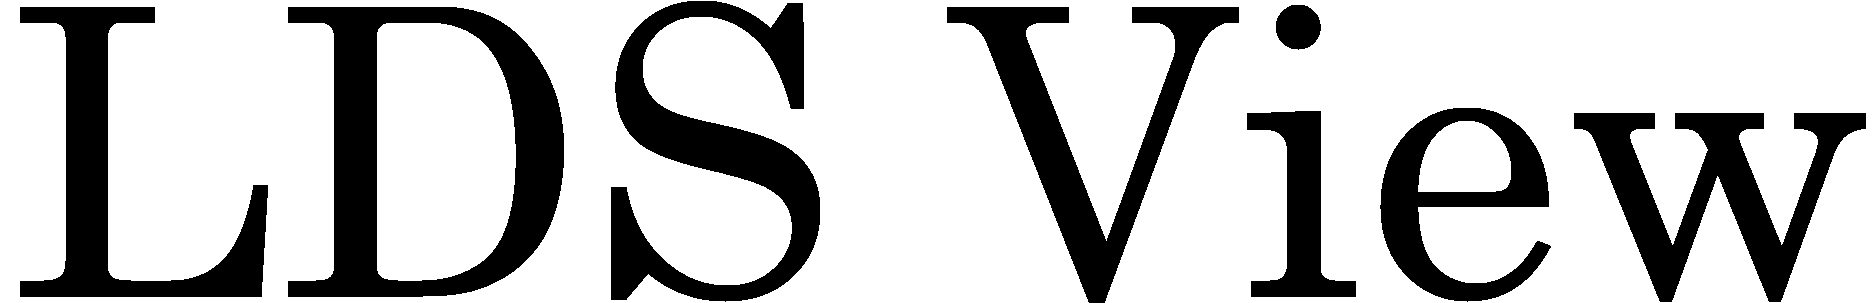 wordcruncher-logo